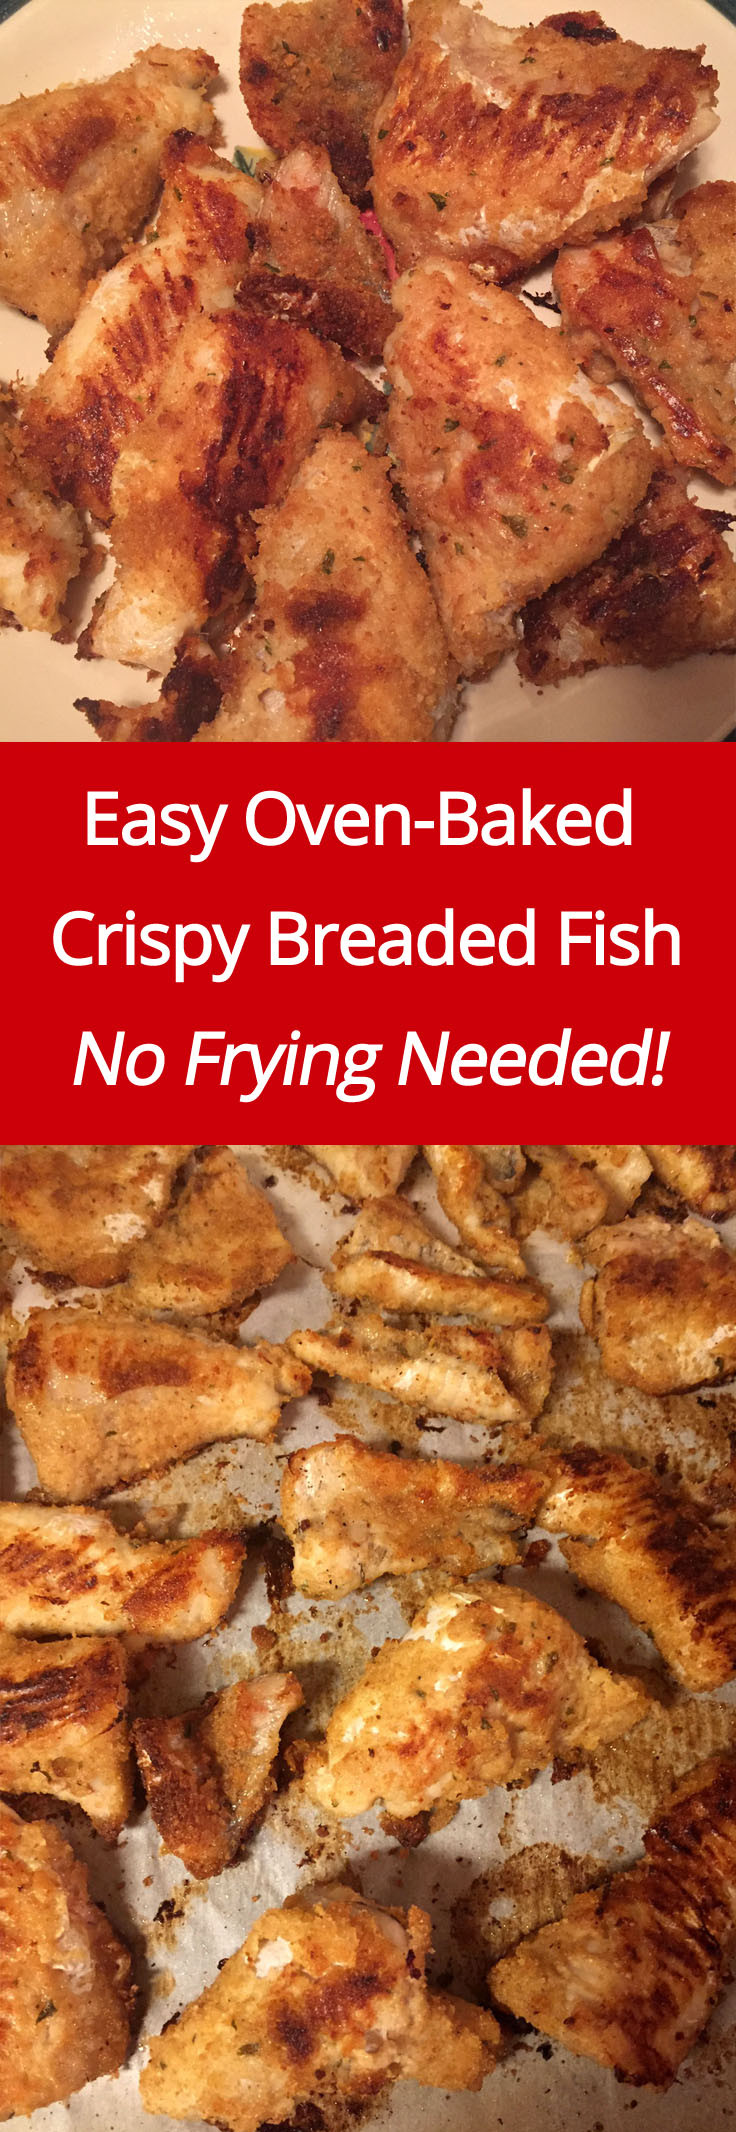 Crispy Baked Fish Recipes
 Crispy Oven Baked Breaded Fish Recipe – No Frying Needed